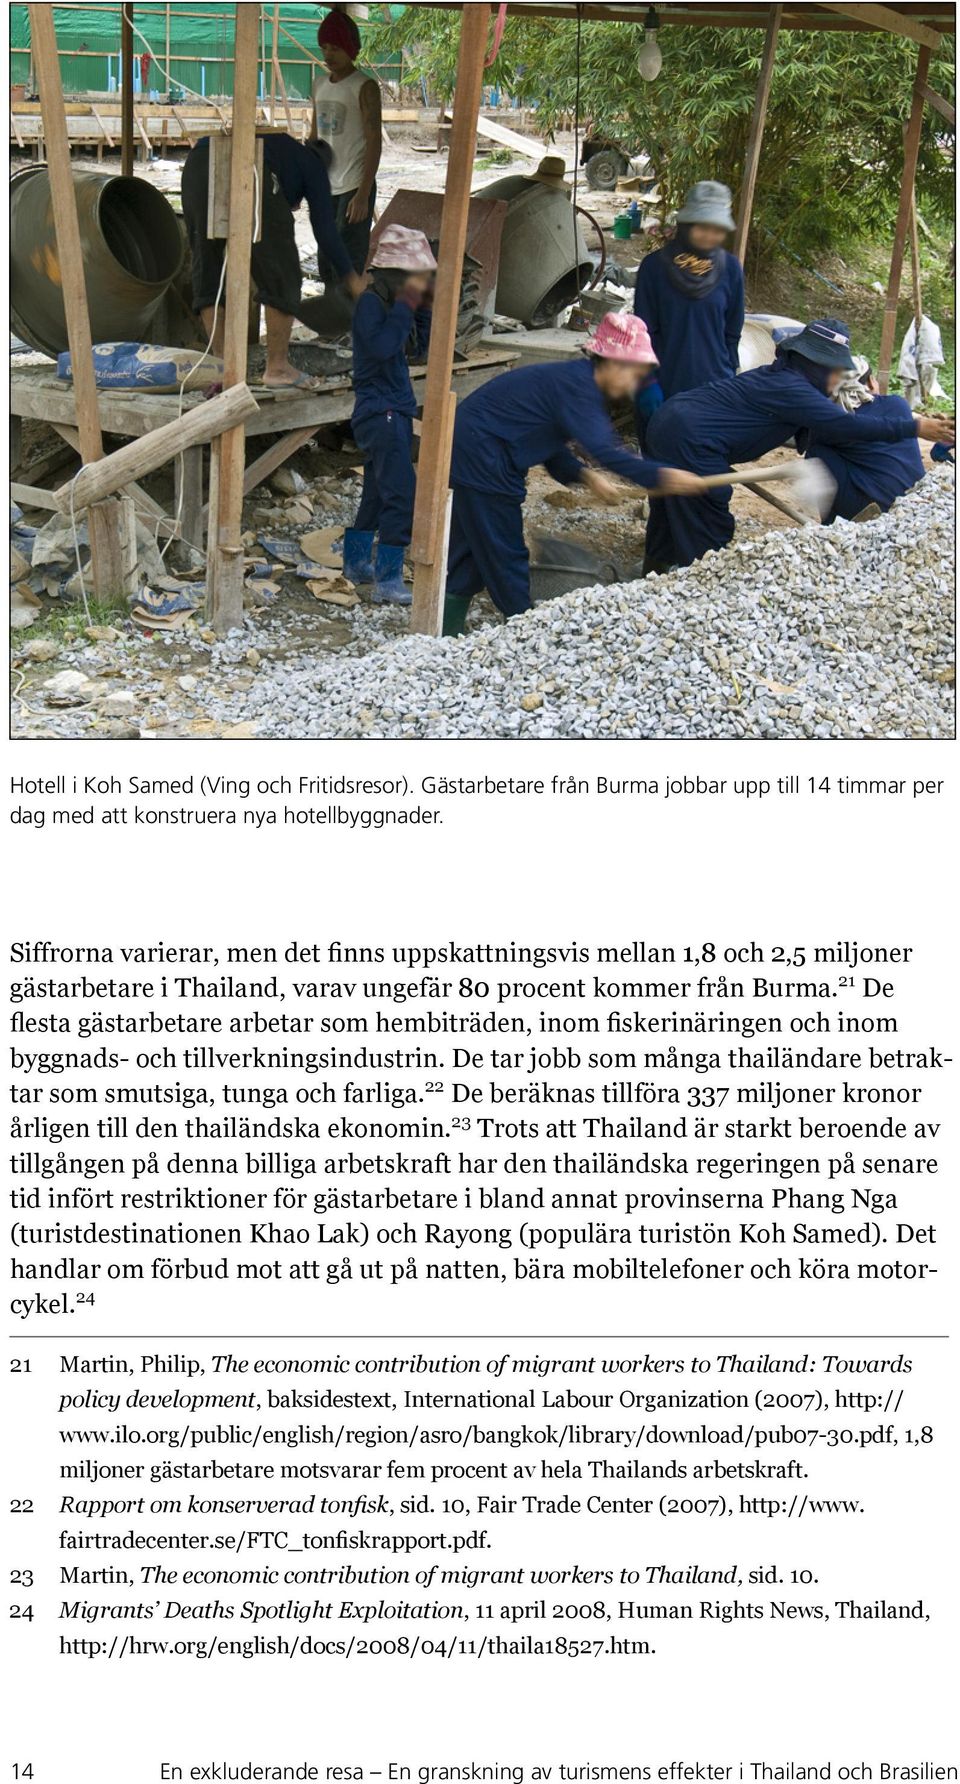 21 De flesta gästarbetare arbetar som hembiträden, inom fiskerinäringen och inom byggnads- och tillverkningsindustrin. De tar jobb som många thailändare betraktar som smutsiga, tunga och farliga.